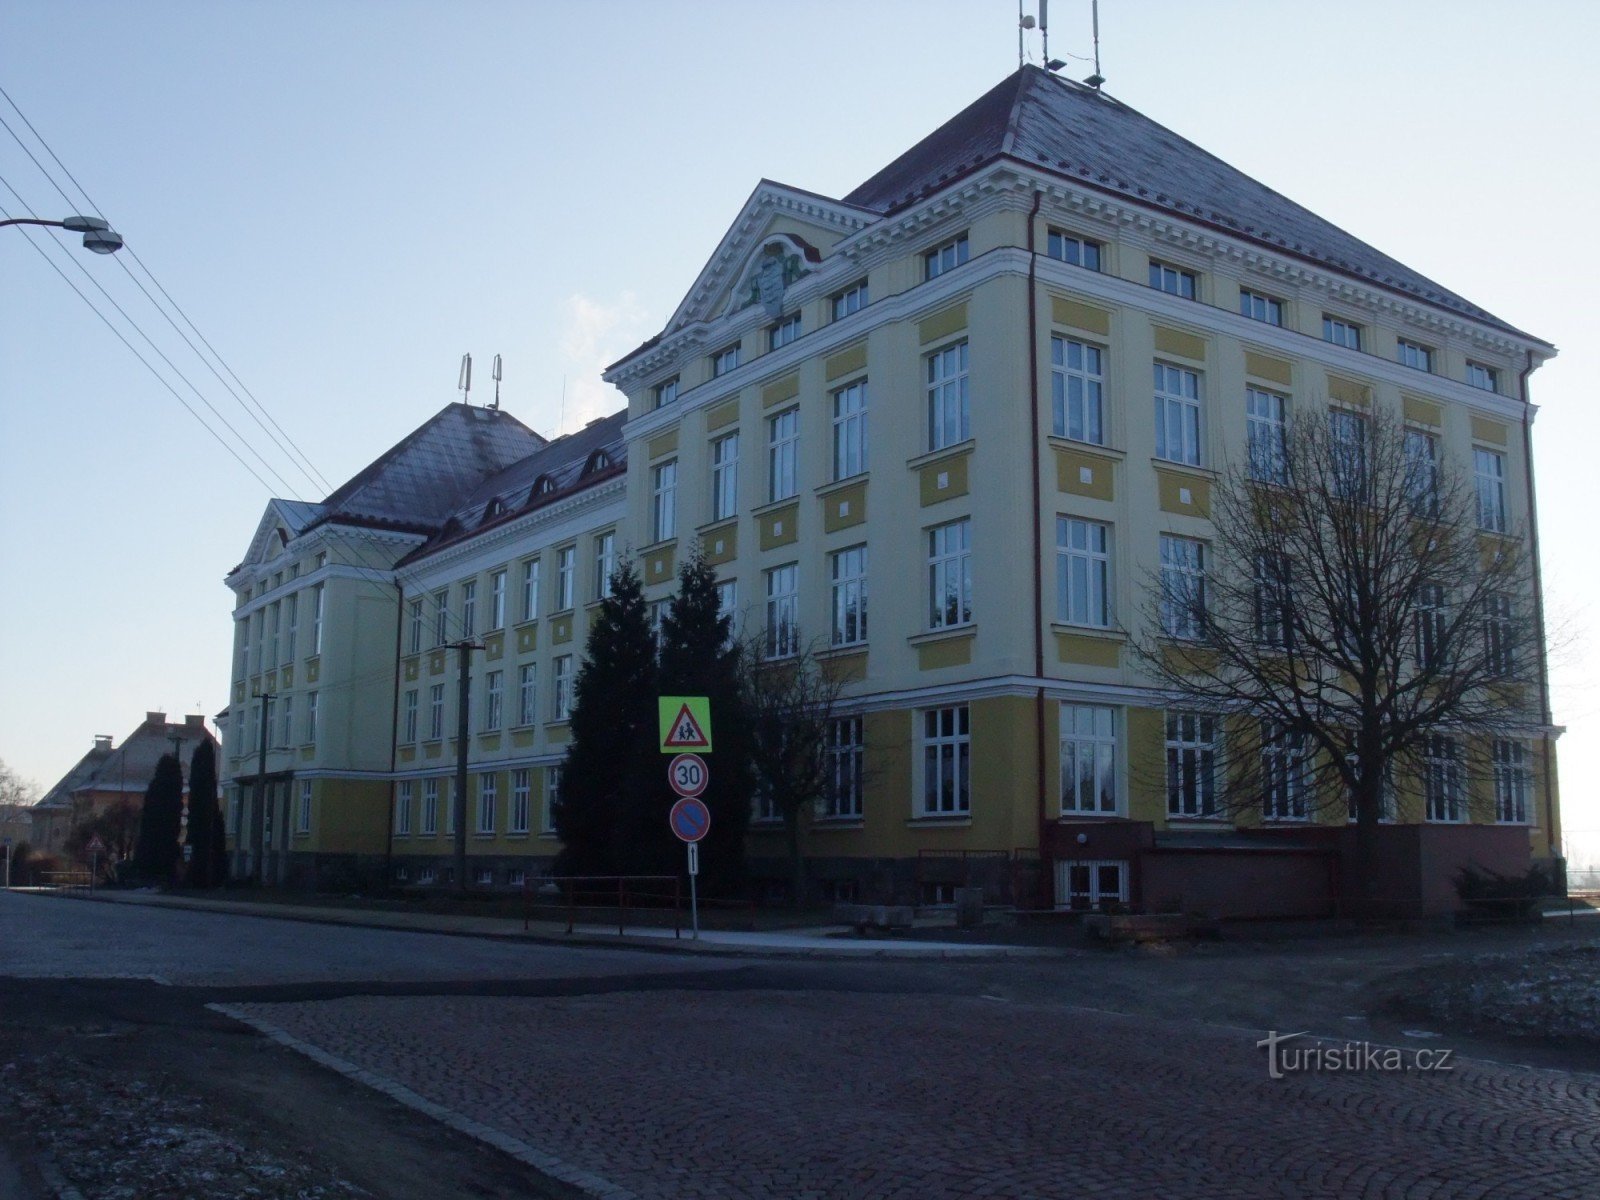 3e école primaire, rue Okružní, Aš. A droite du bâtiment se trouve un chemin menant à la paloučka de Beneš